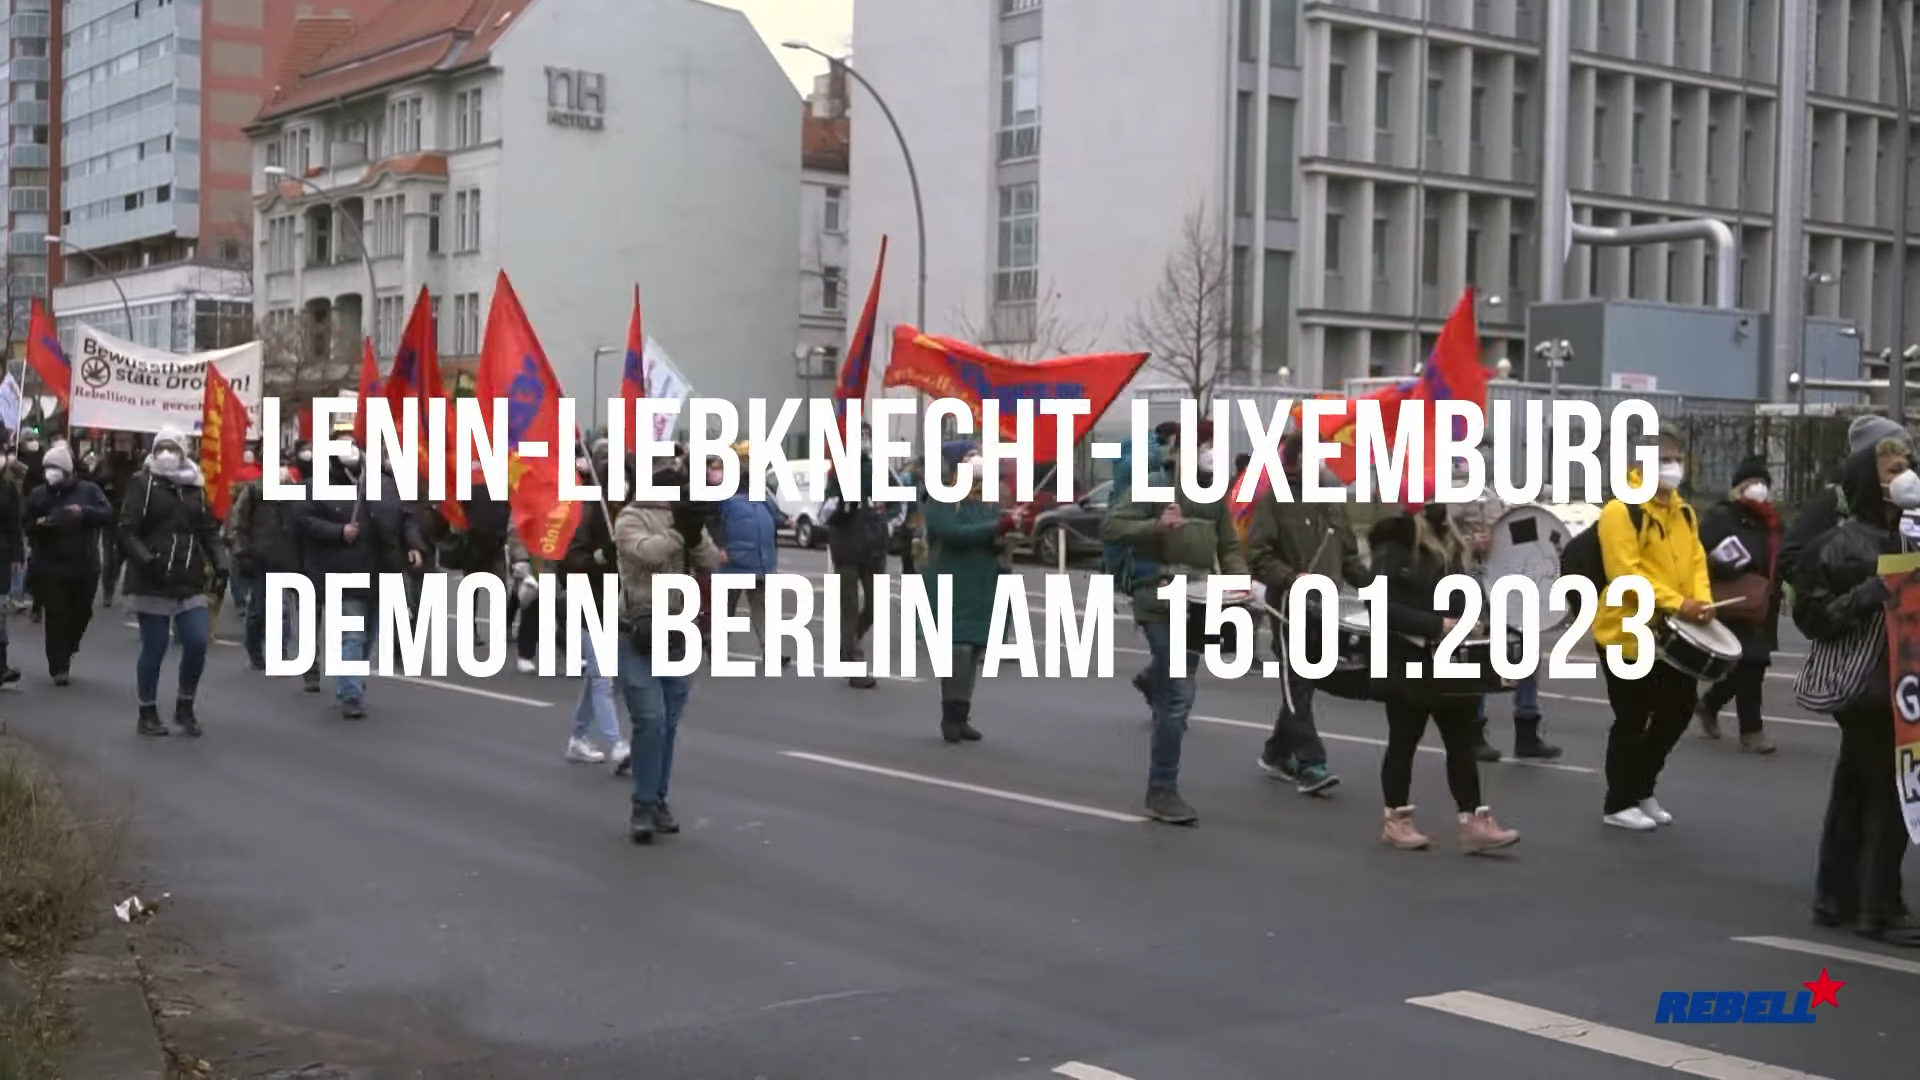 Video: Lenin-Liebknecht-Luxemburg-Aktivitäten am 14./15.1.2023 – Seid dabei!